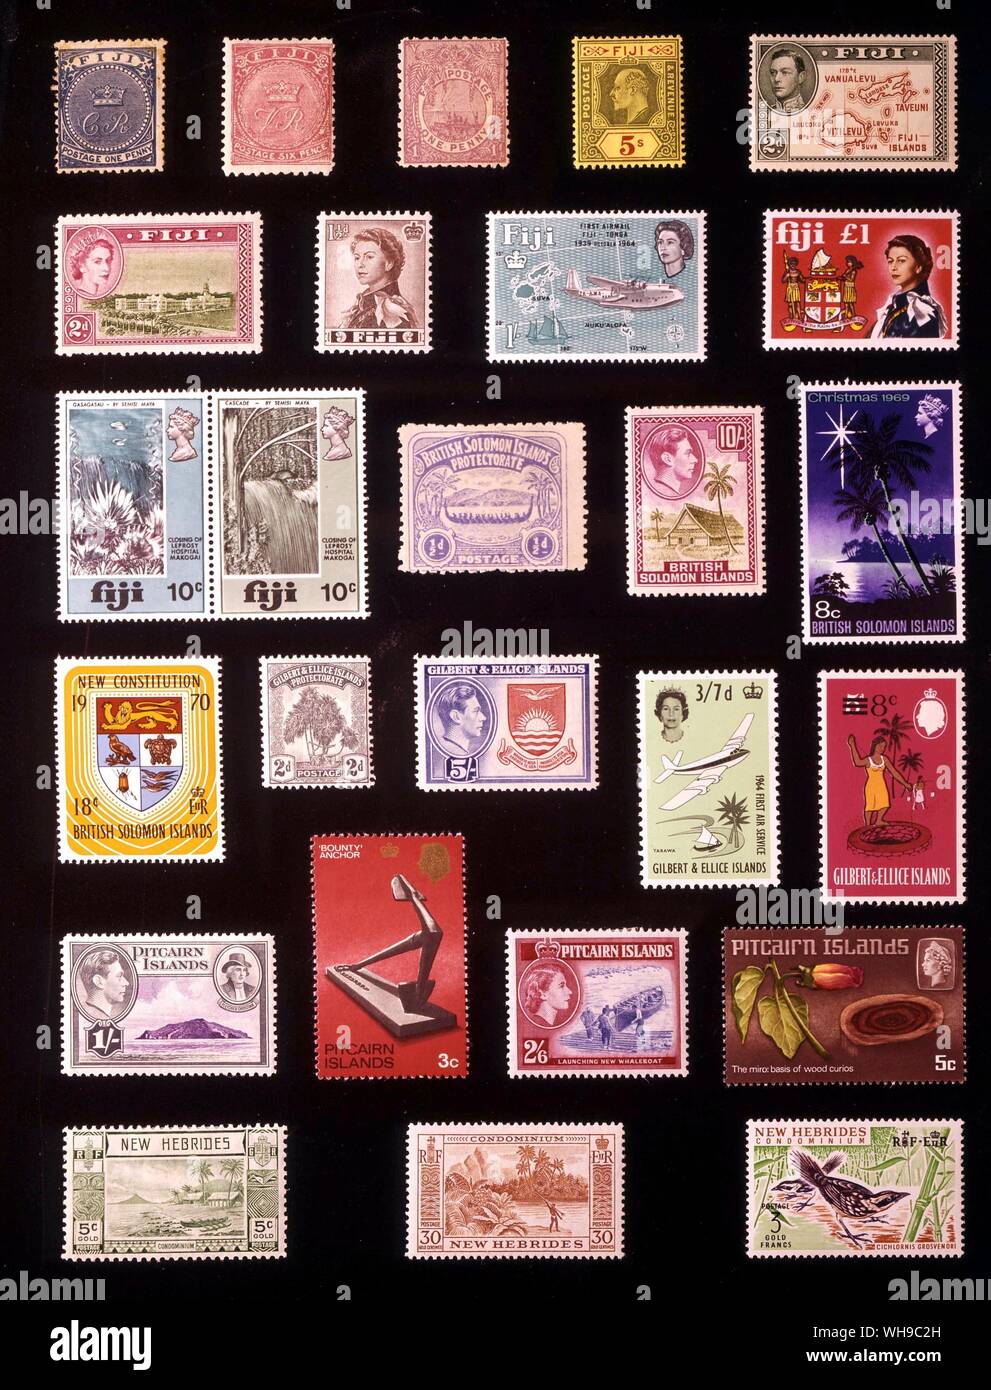 AUSTRALIA Y POLINESIA - Alta Comisión del Pacífico Occidental: (de izquierda a derecha) 1. Fiji, 1 centavo de 1871, 2. Fiji, 6 peniques, 1878 3. Fiji, 1 centavo, 1895 4. Fiji, 5 chelines, 1911, 5. Fiji, 2 peniques de 1938, 6. Fiji, 2 peniques, 1954, 7. Fiji, 1,5 peniques, 1962, 8. Fiji, 1 Shilling 1964, 9. Fiji, 1 libra, 1968, 10. Fiji, 10 + 10 centavos, 1970, 11. Protectorado británico de las Islas Salomón, 0,5 centavo, 1907, 12. Las Islas Salomón Británicas, 10 chelines, 1942, 13. Las Islas Salomón Británicas, 8 centavos, 1969, 14. Las Islas Salomón Británicas, 18 centavos, 1970, 15. Las Islas Gilbert y Ellice, 2 peniques, 1911, 16. Gilbert y Ellice Foto de stock